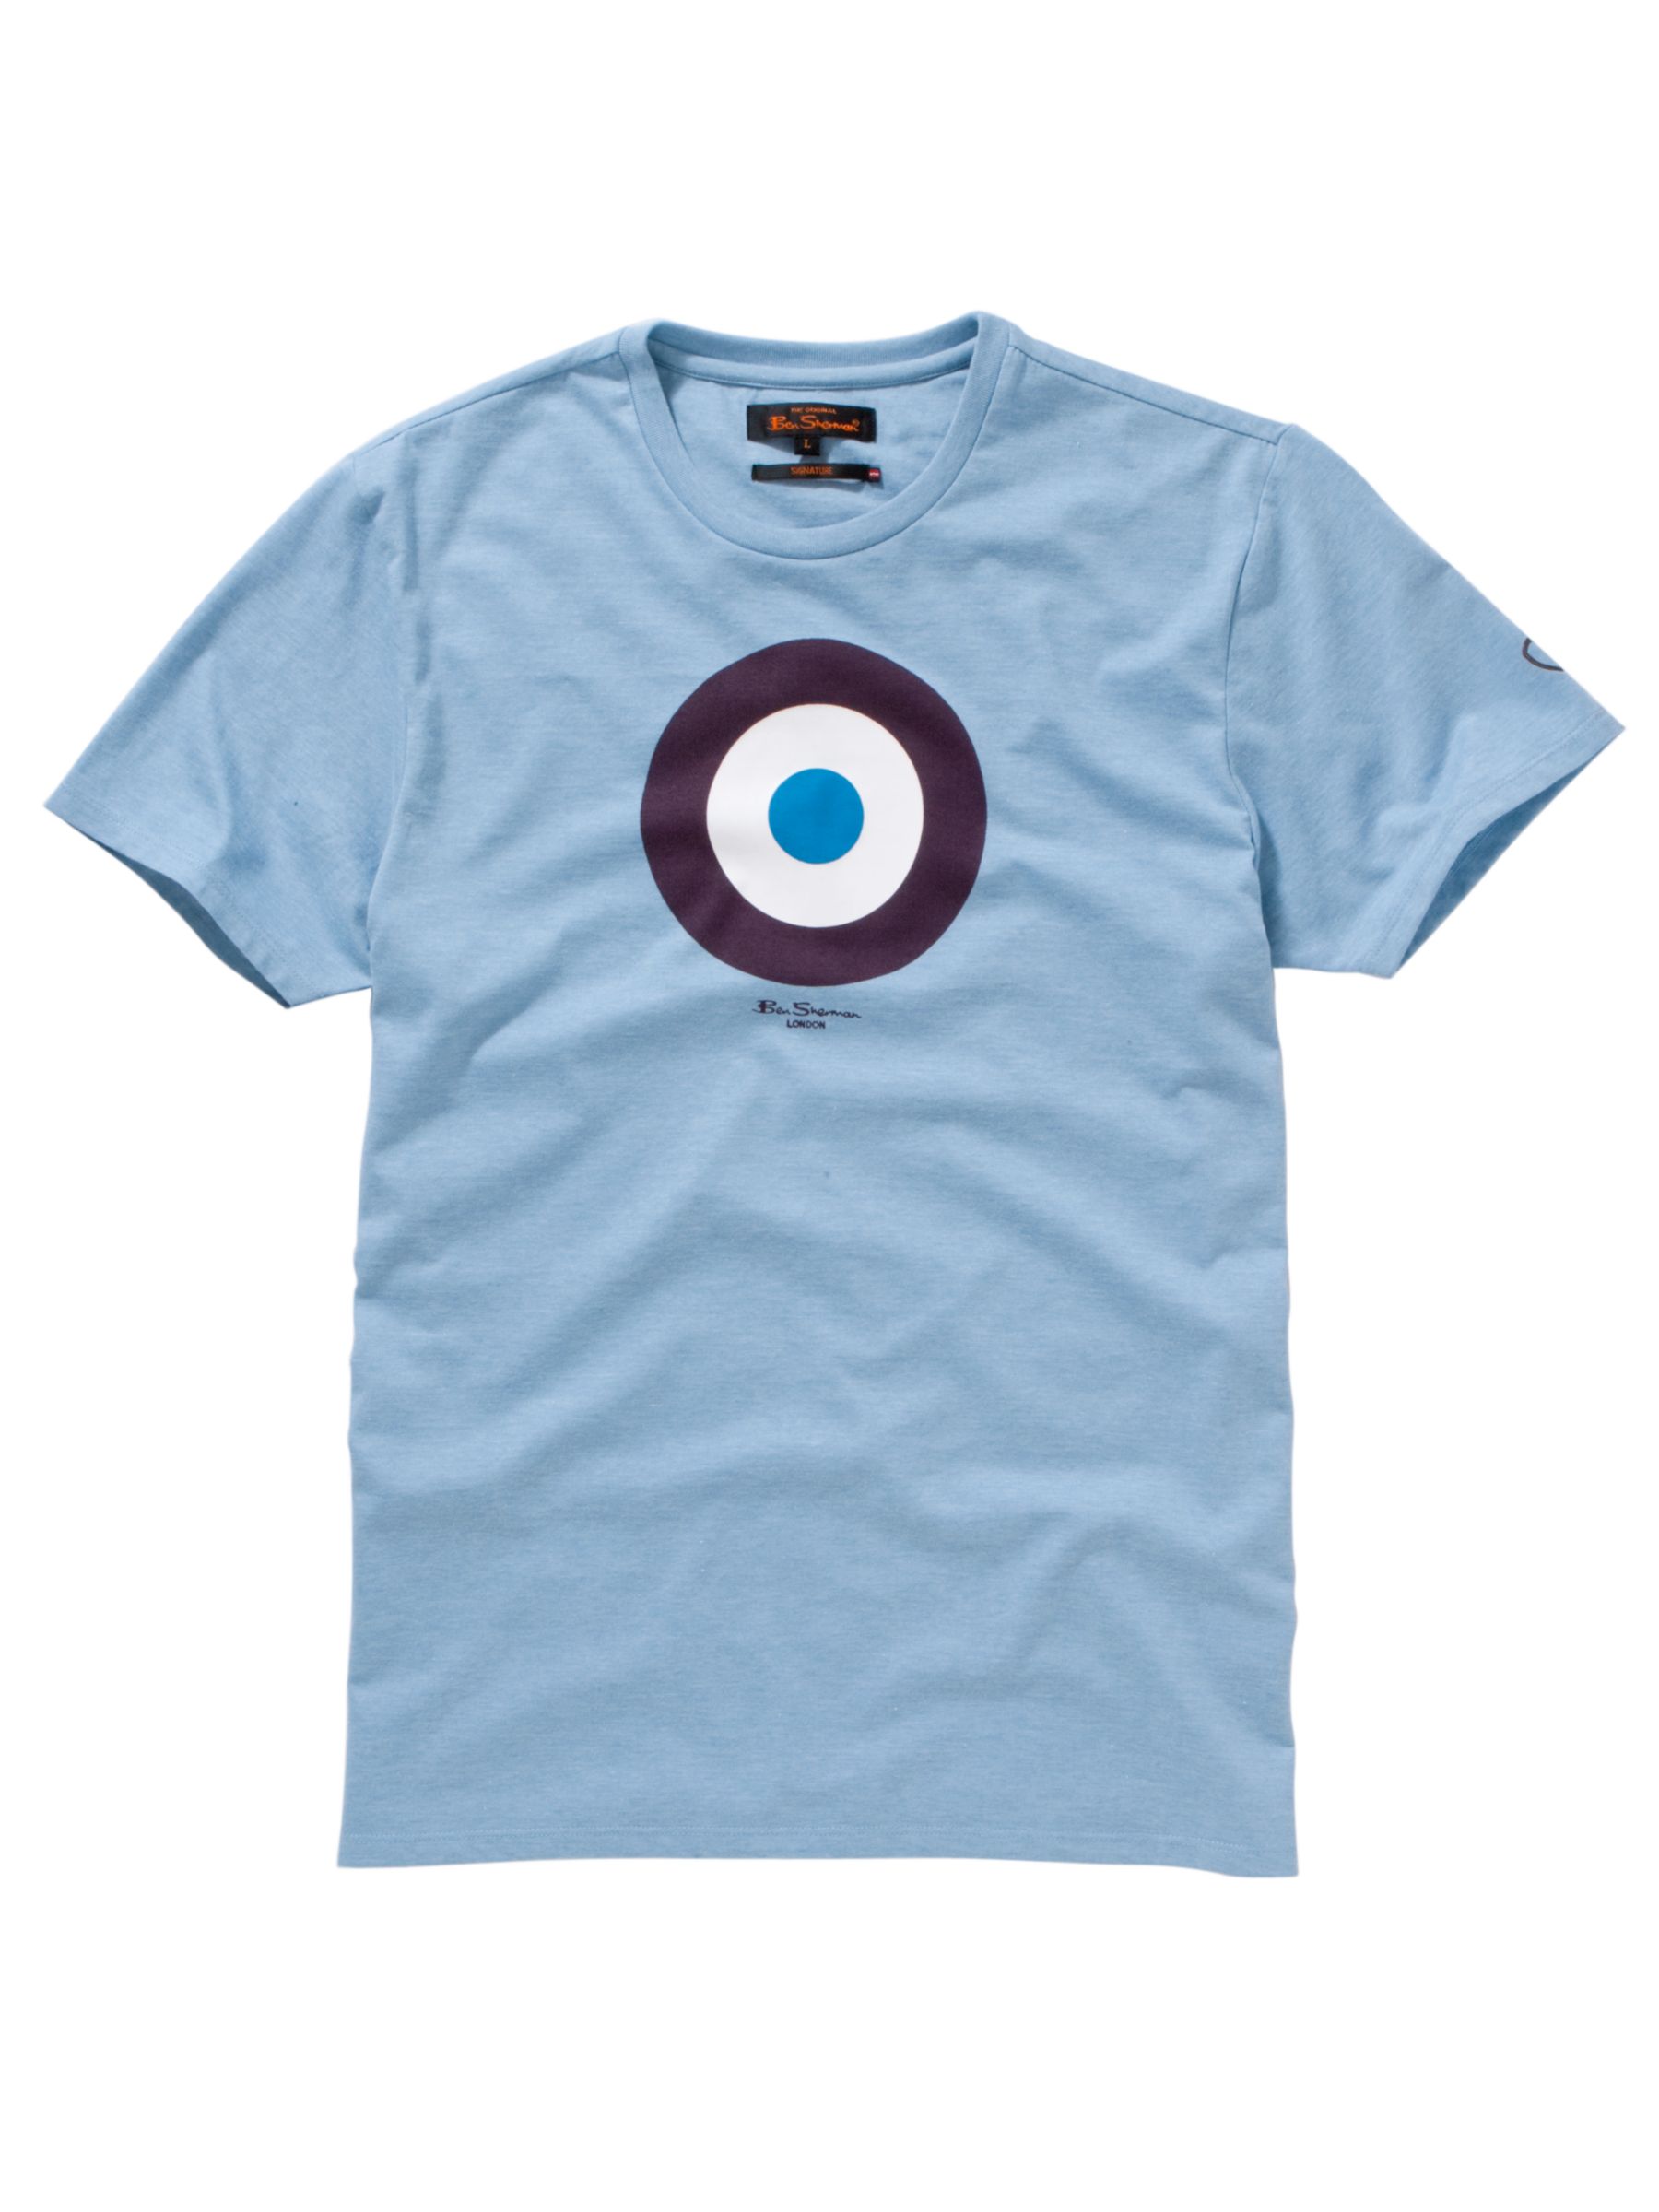 Ben Sherman Target Print T-Shirt, Blue Marl